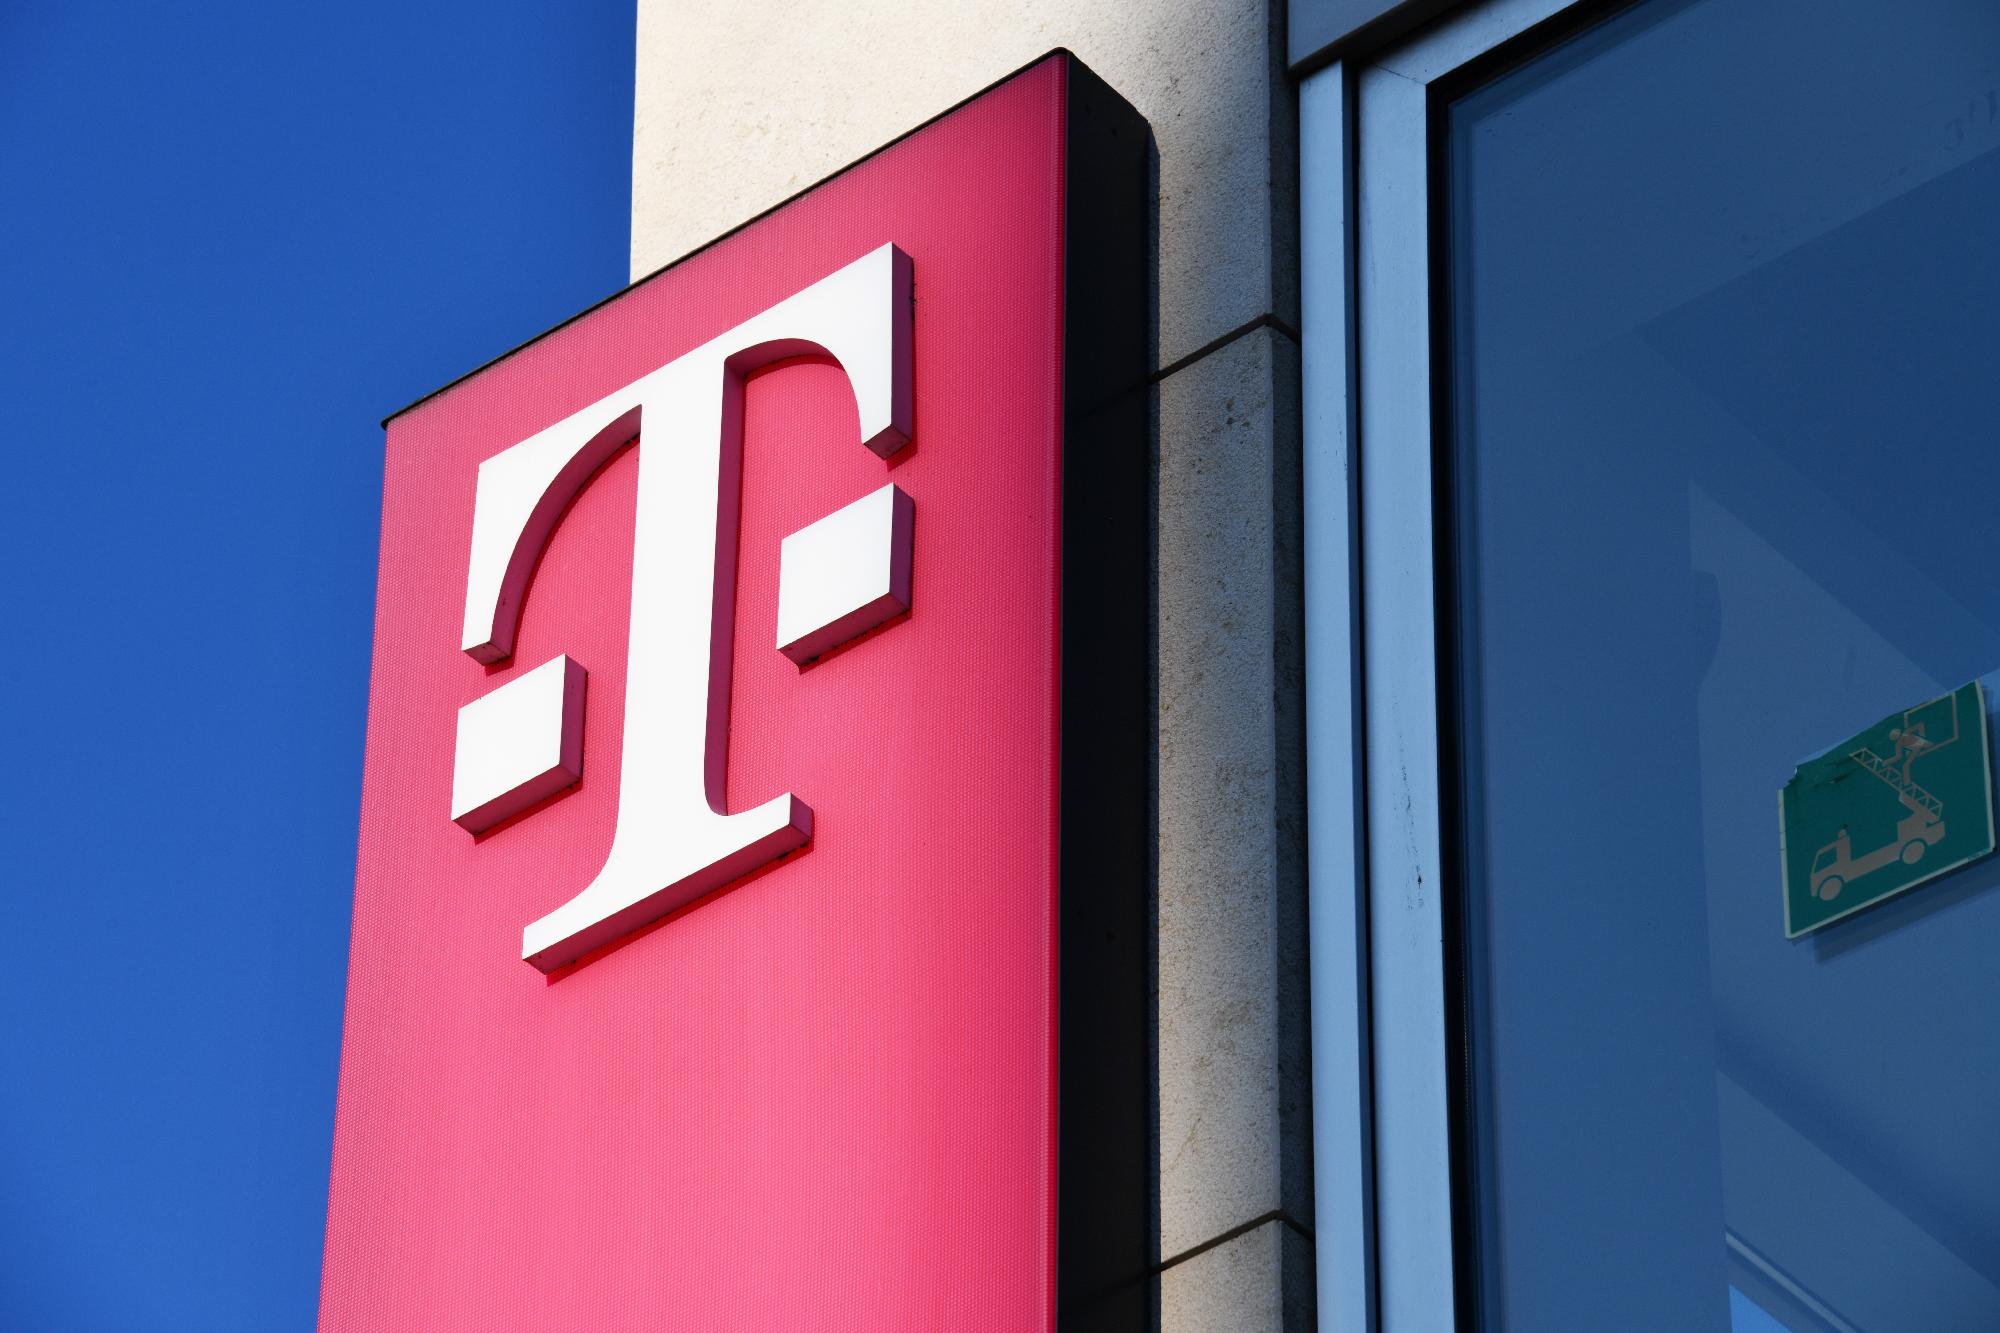 Lekapcsolta 3G hálózatát a Magyar Telekom